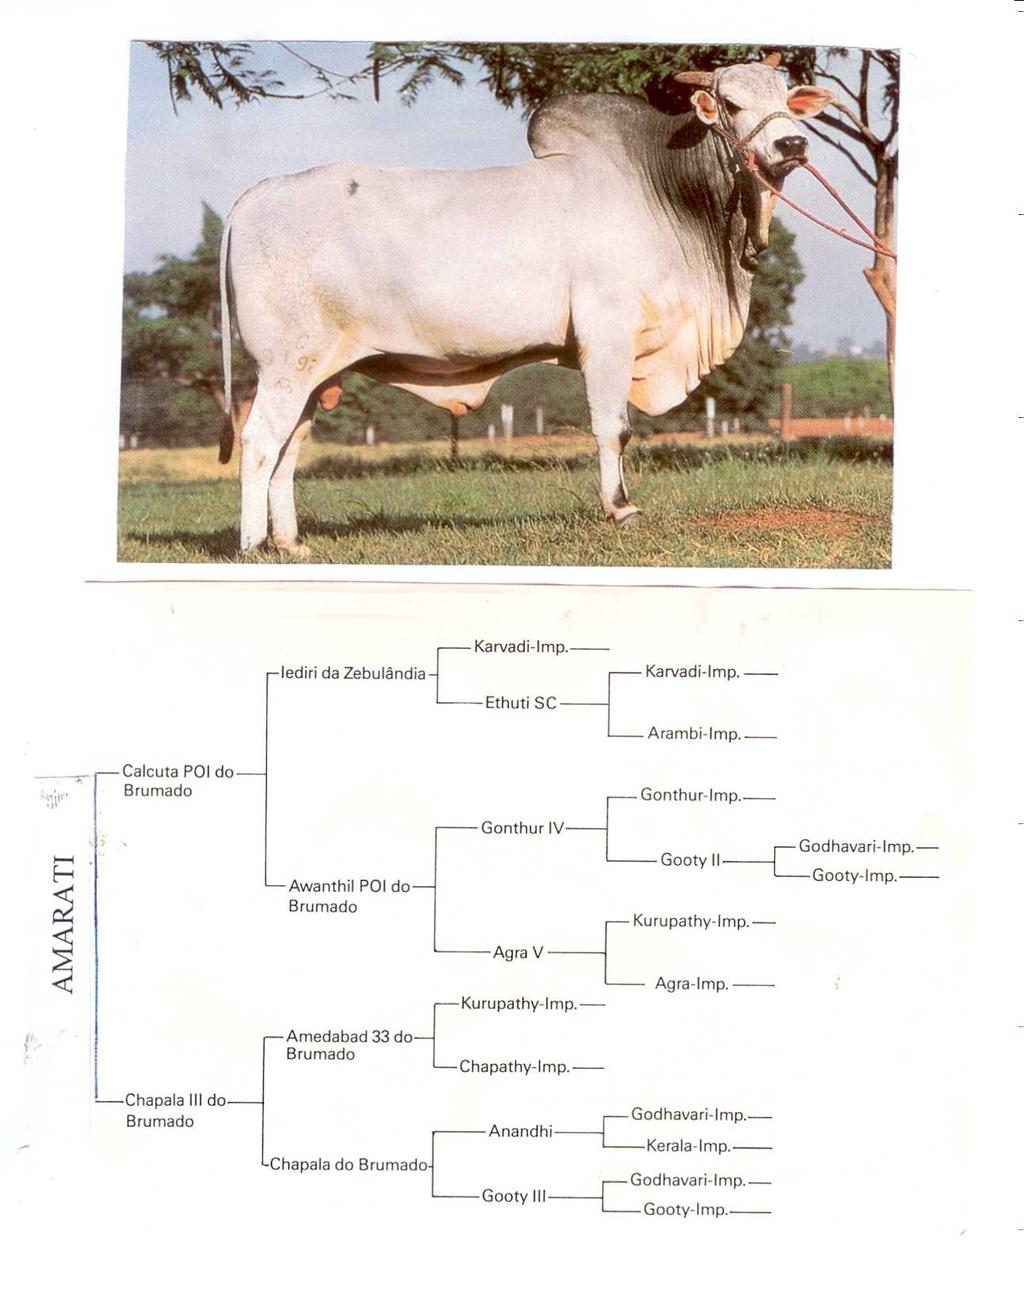 7. Considerando o pedigree abaixo, pede-se: a) Calcular o coeficiente de endogamia do touro Amarati b) Montar a tabela de covariâncias genéticas para todos os animais do pedigree c) Qual é a